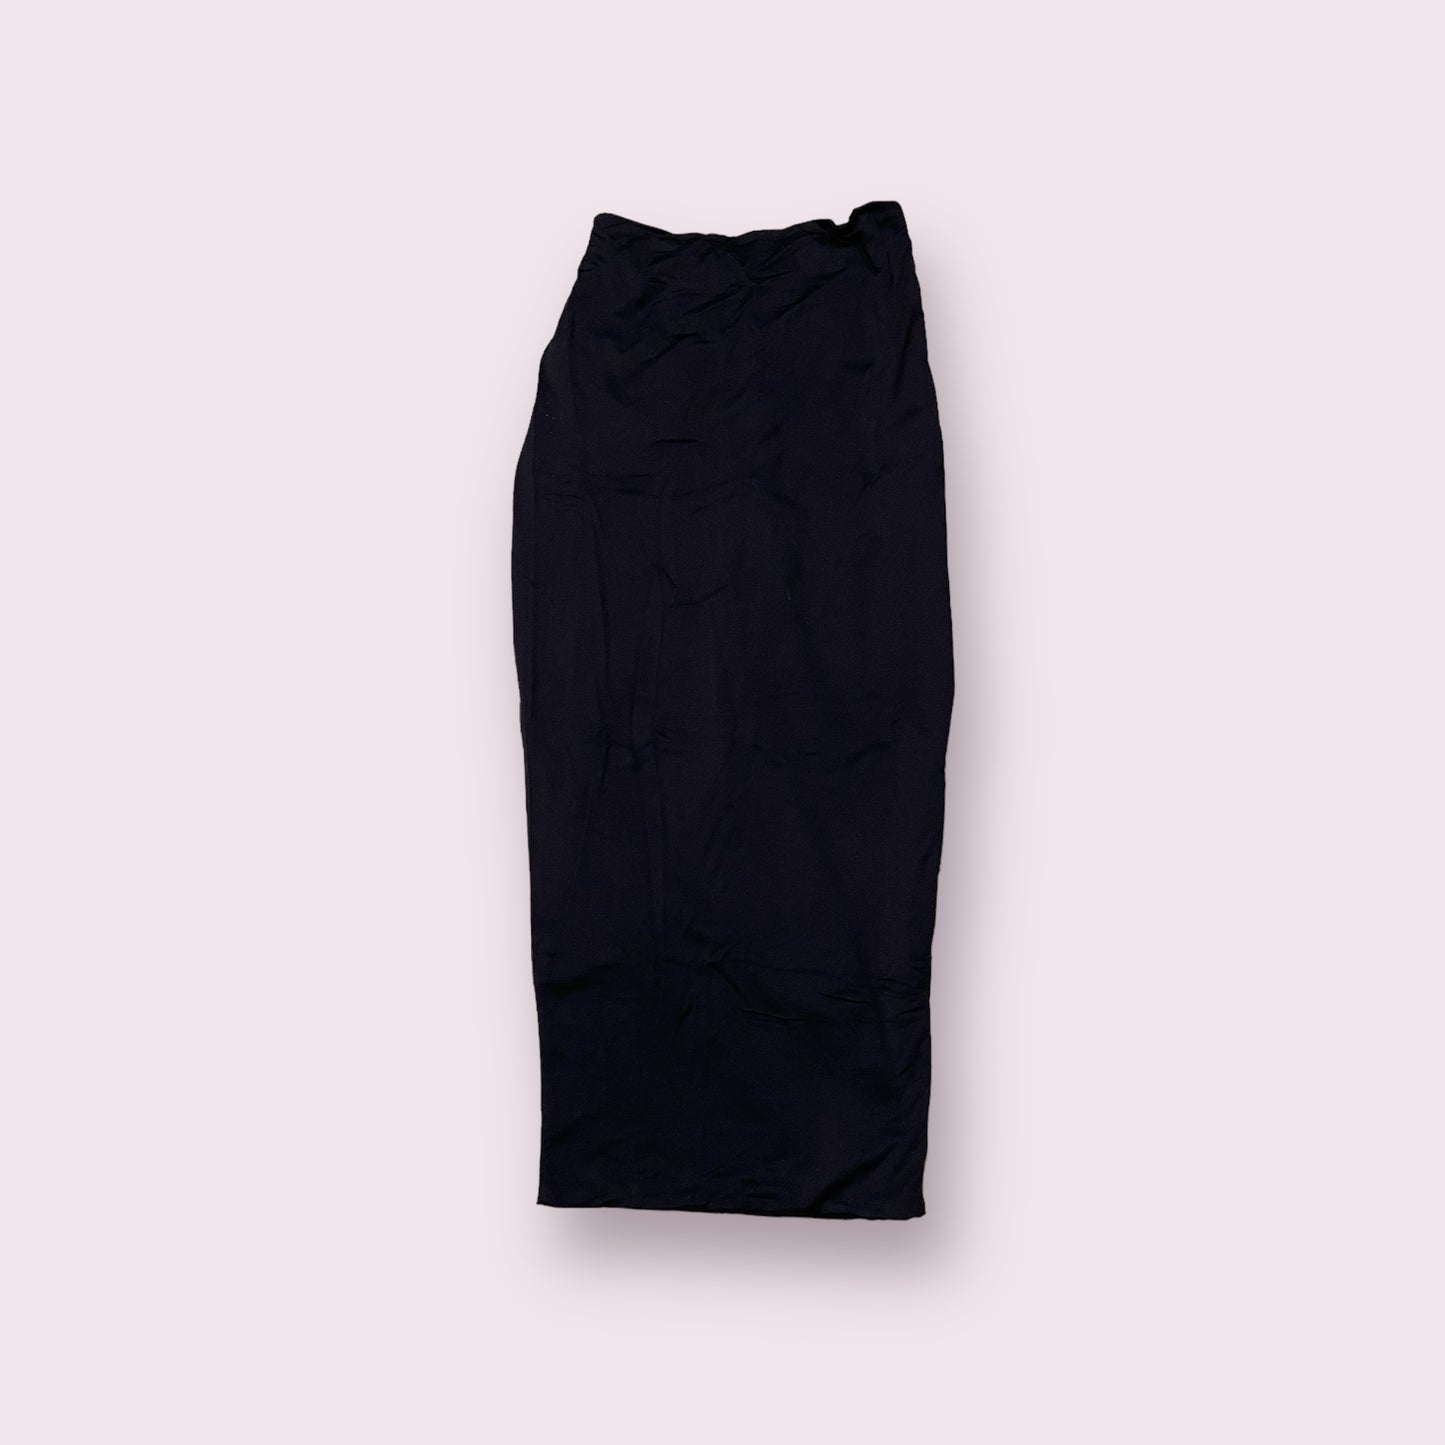 meshki black skirt